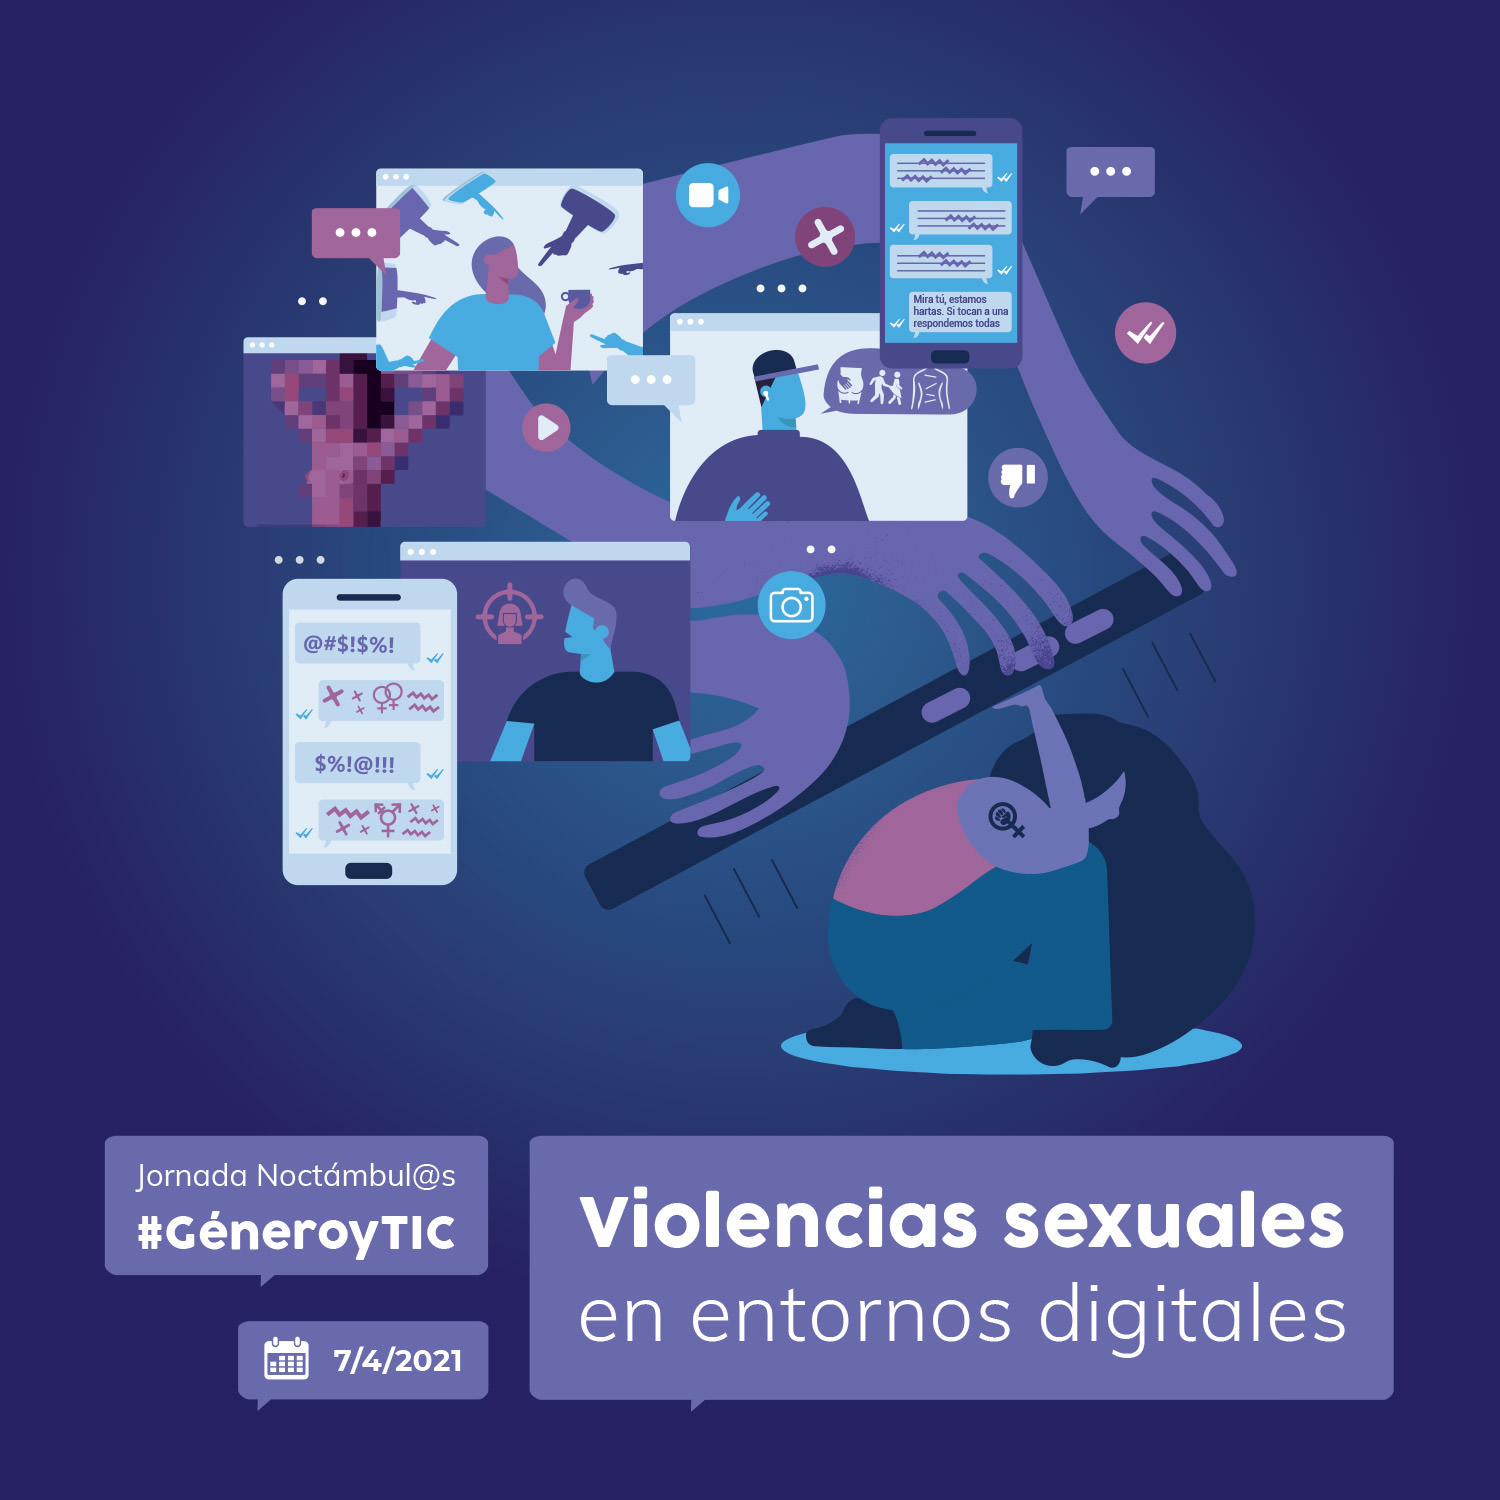 Jornada Noctámbul@s: #GéneroyTIC - Violencias sexuales en entornos digitales